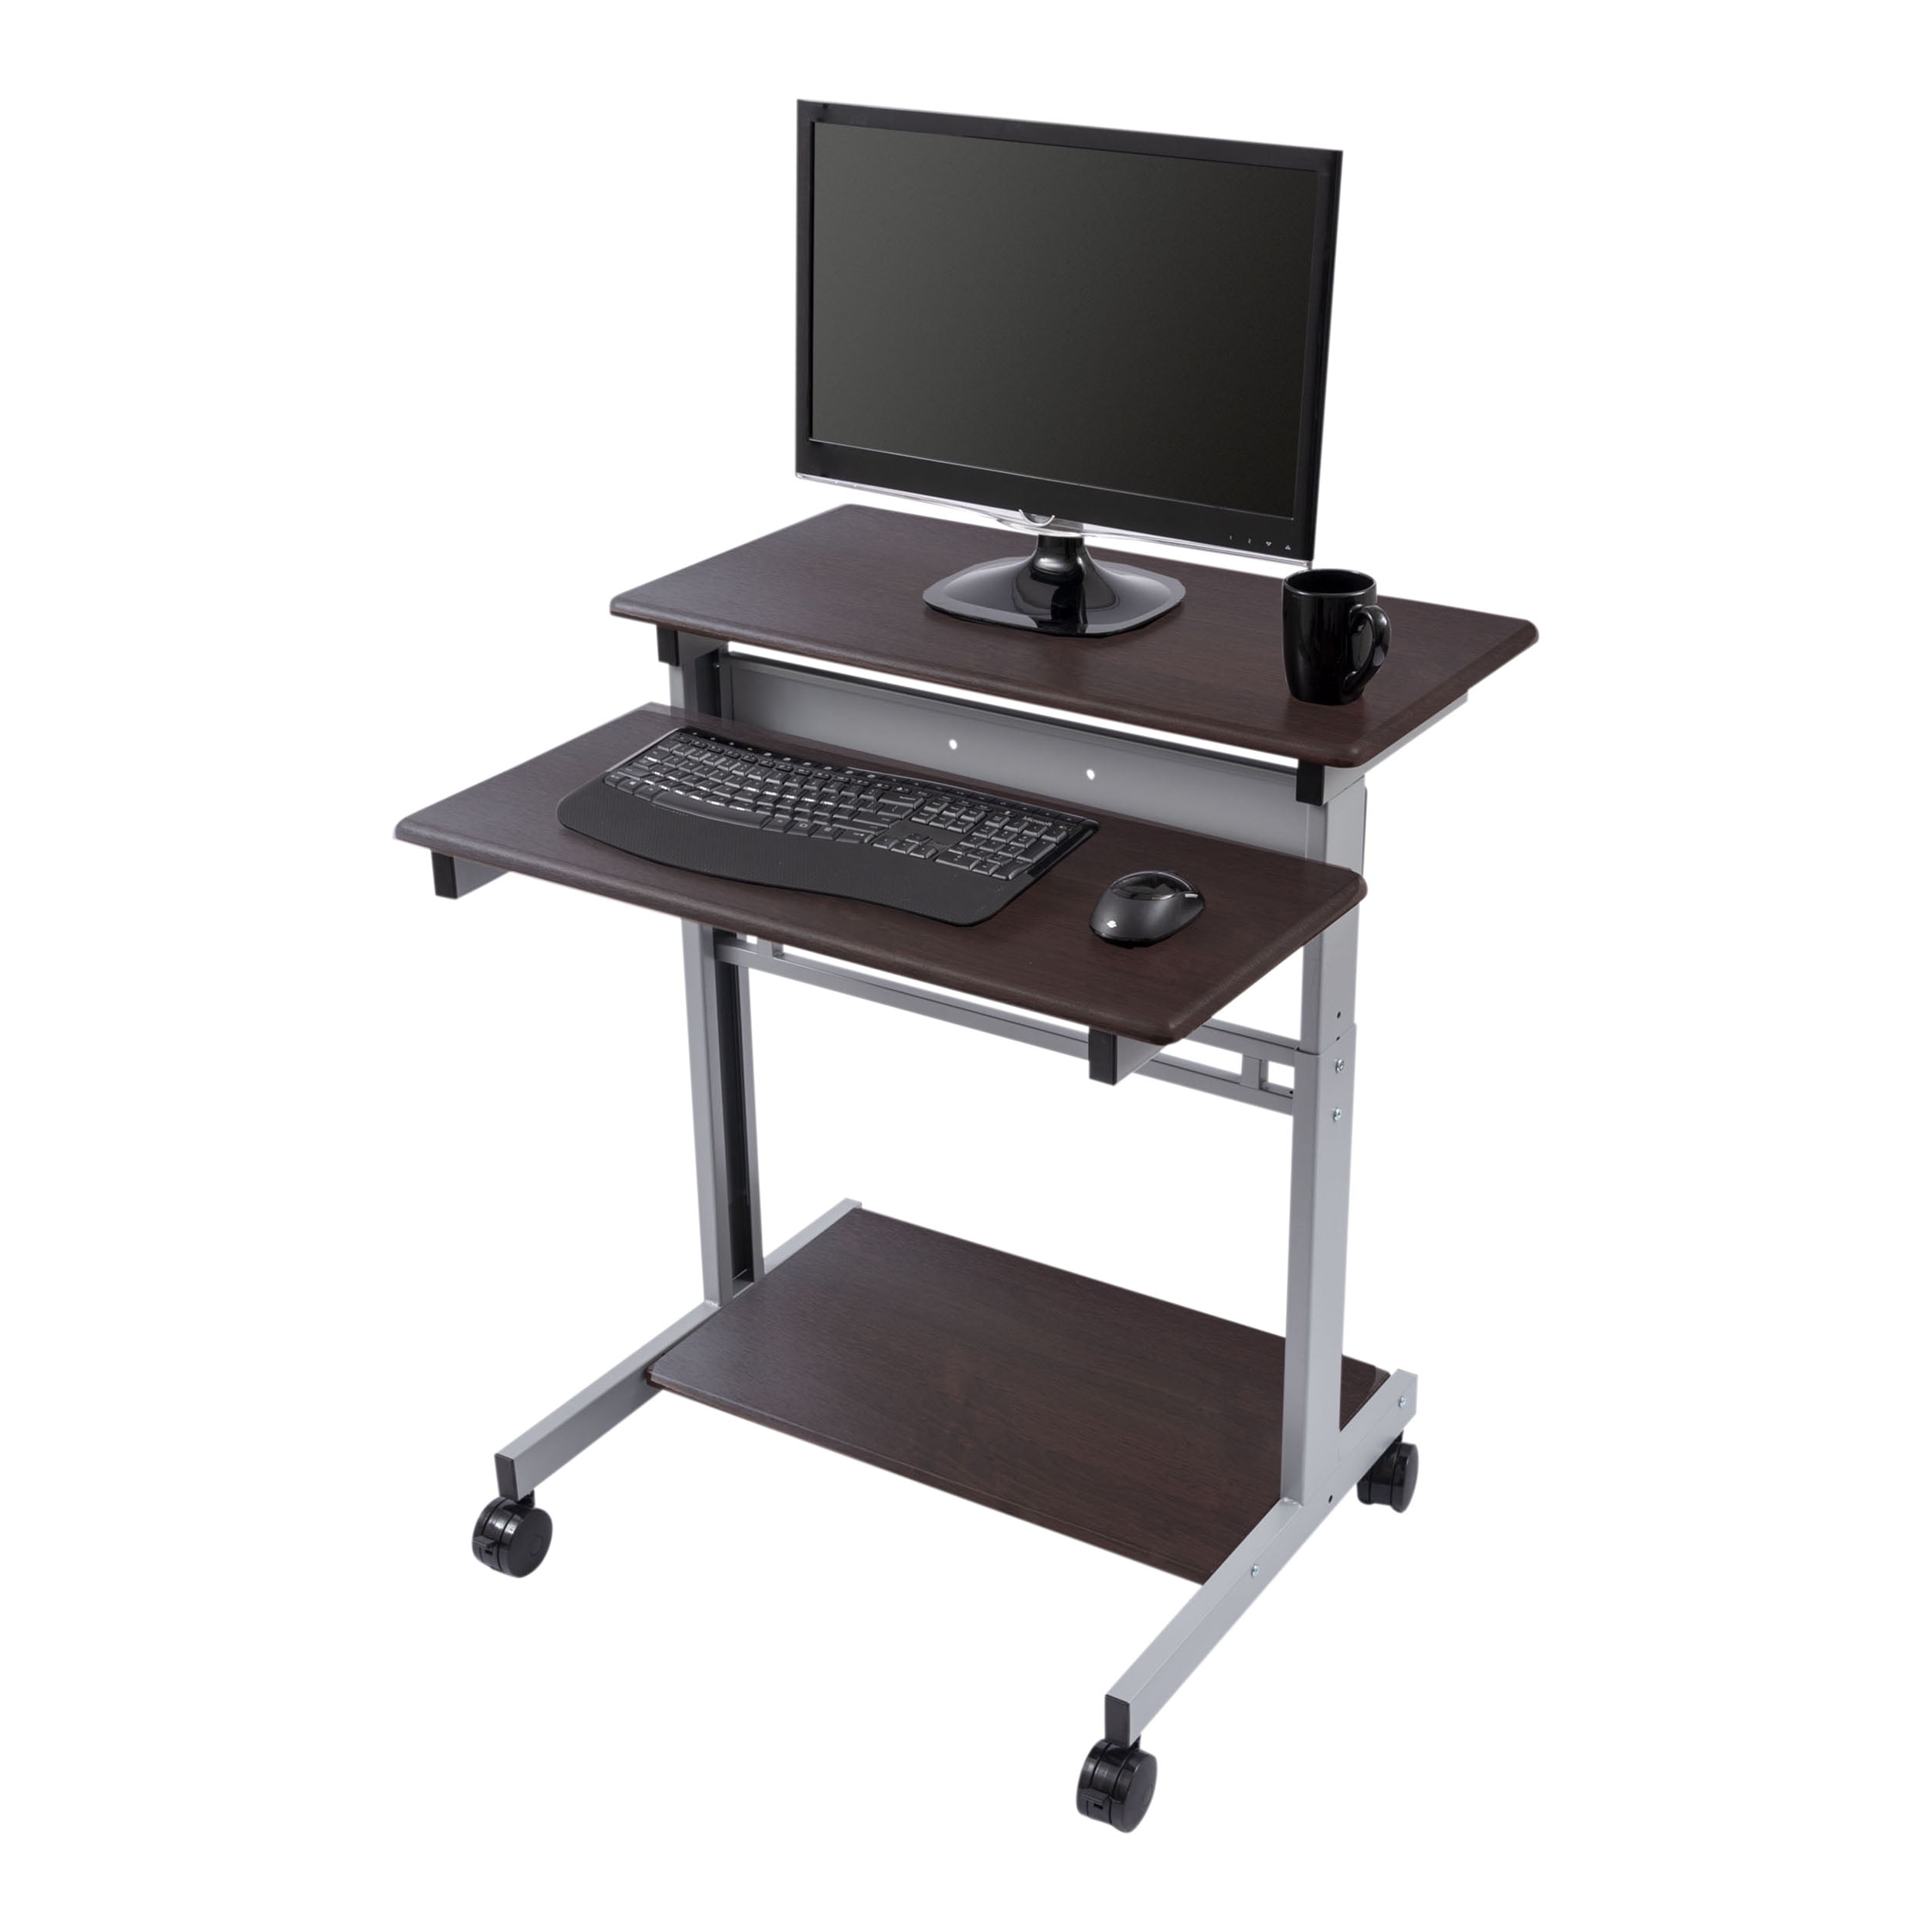 Details about   Computer Desk Table Rolling  2-Shelf Locking Caster Workstation  Adjustable 